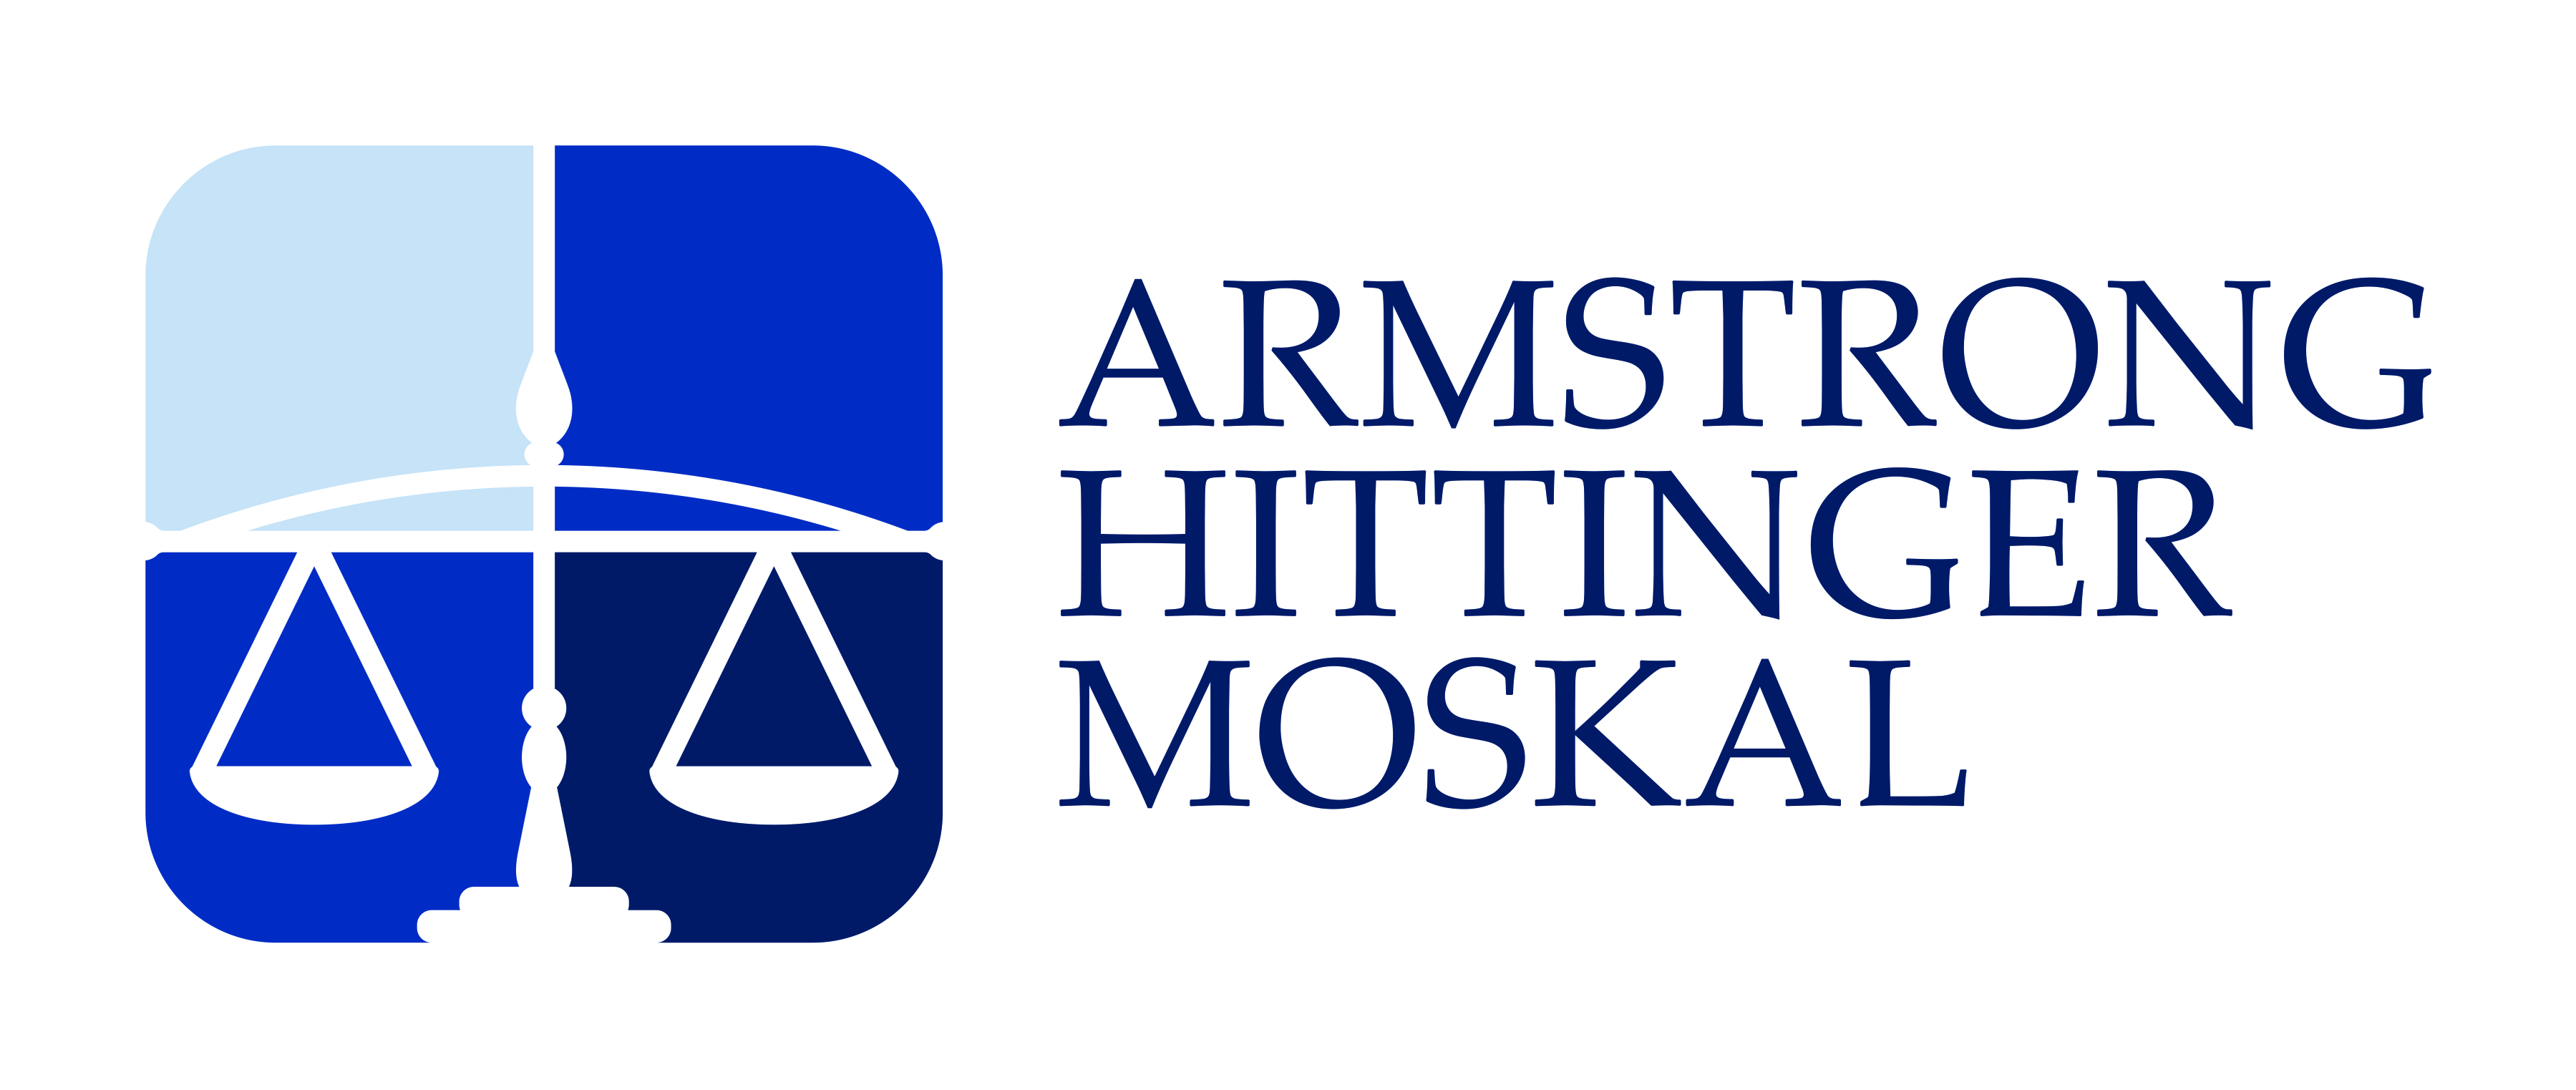 Logo-Armstrong Hittinger Moskal